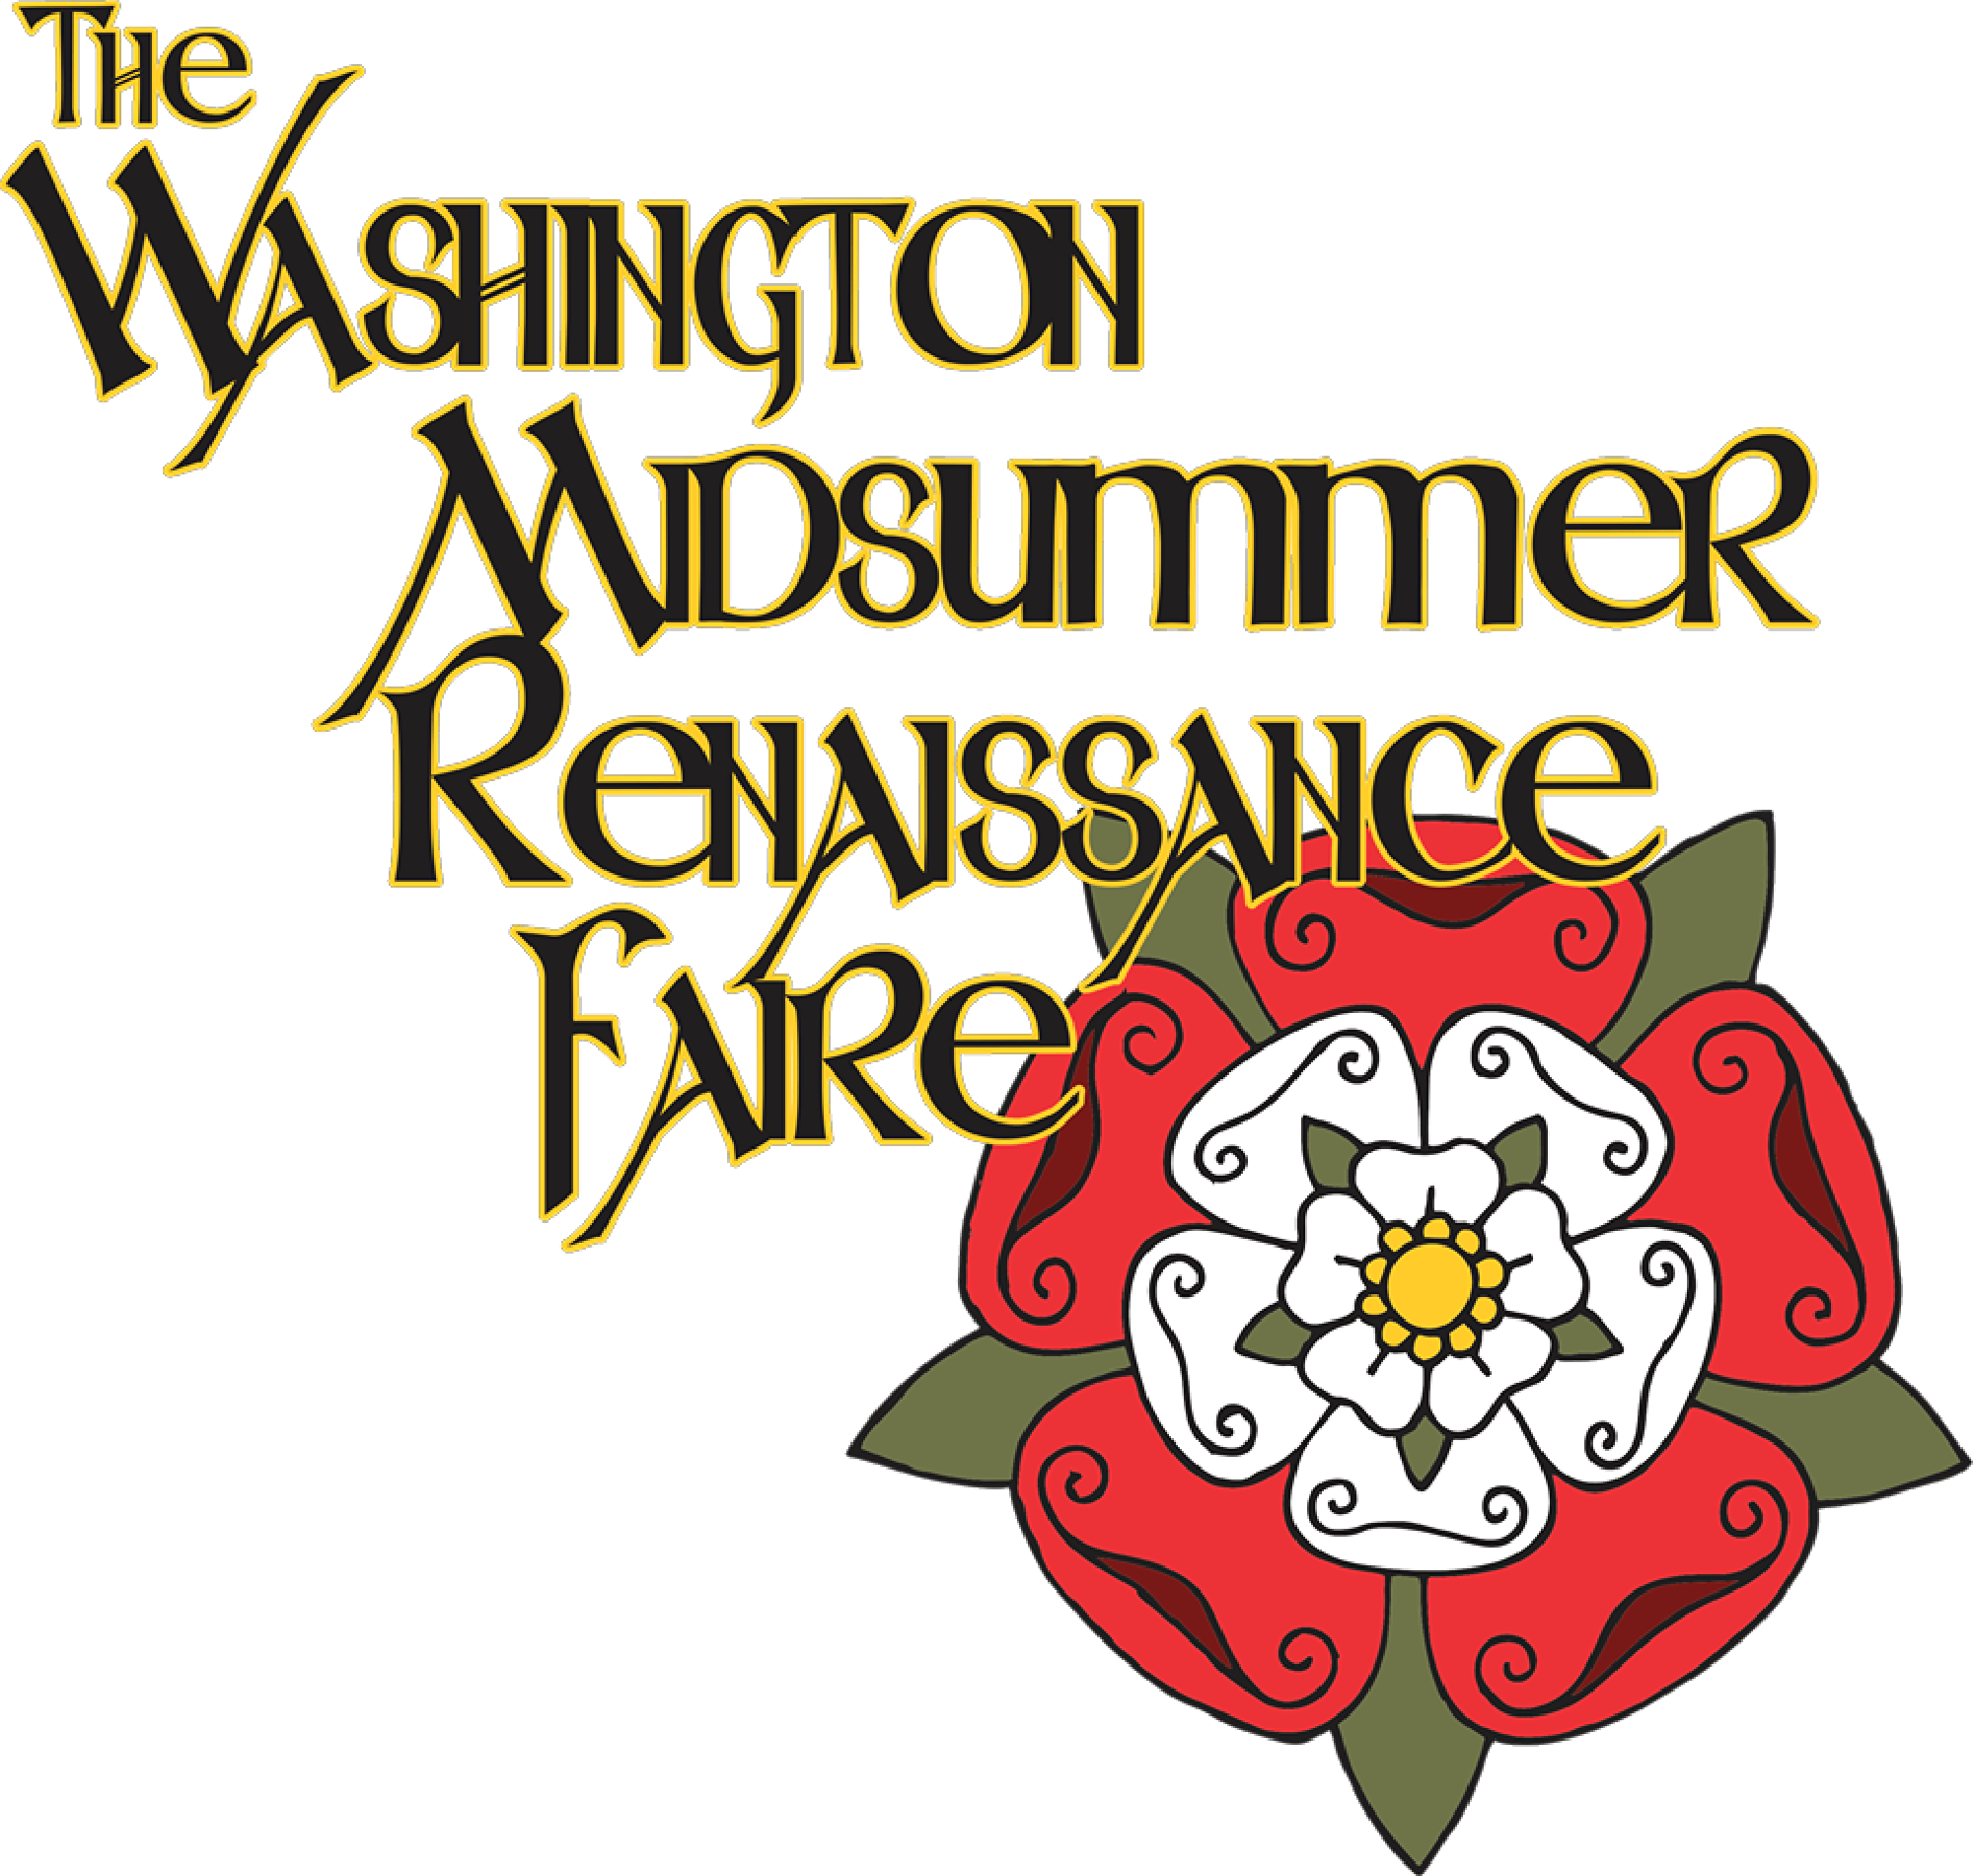 The Washington Midsummer Renaissance Faire